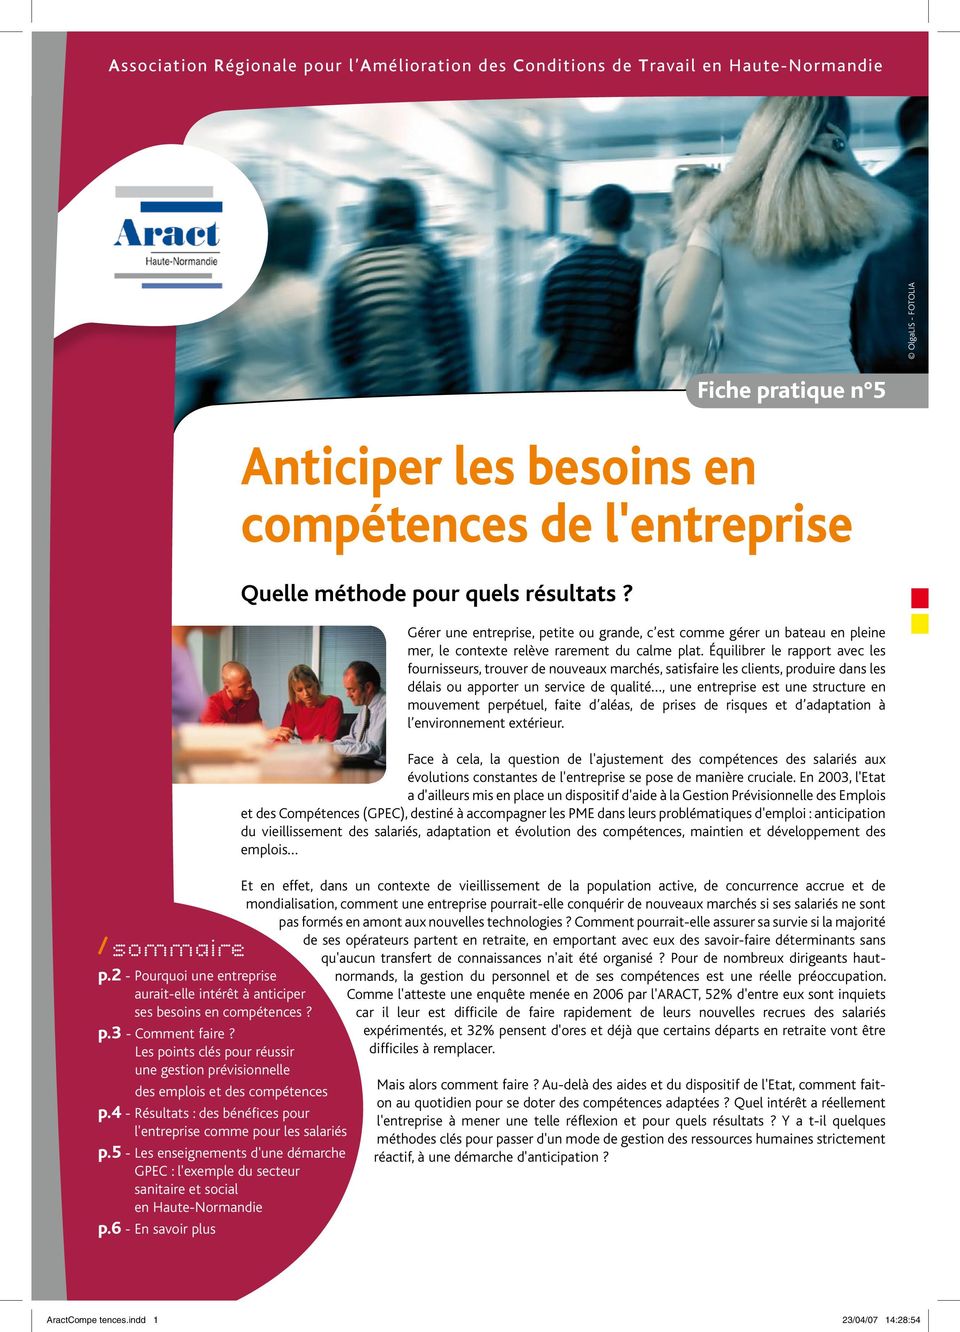 4 - Résultats : des bénéfices pour l'entreprise comme pour les salariés p.5 - Les enseignements d'une démarche GPEC : l'exemple du secteur sanitaire et social en Haute-Normandie p.